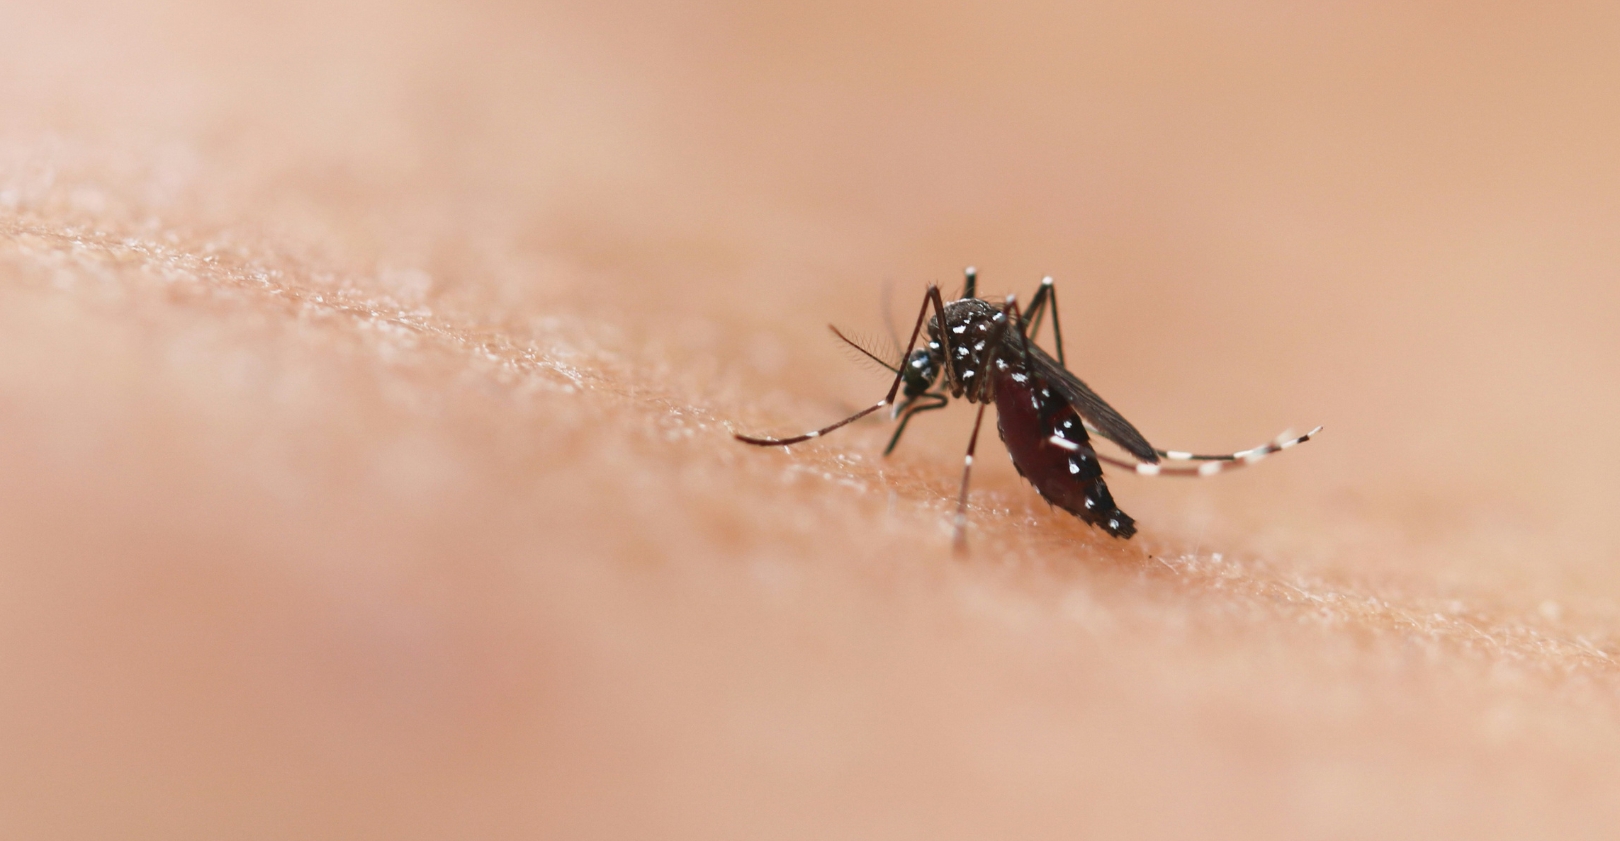 doenca-mosquito-da-dengue-cresce-no-brasil